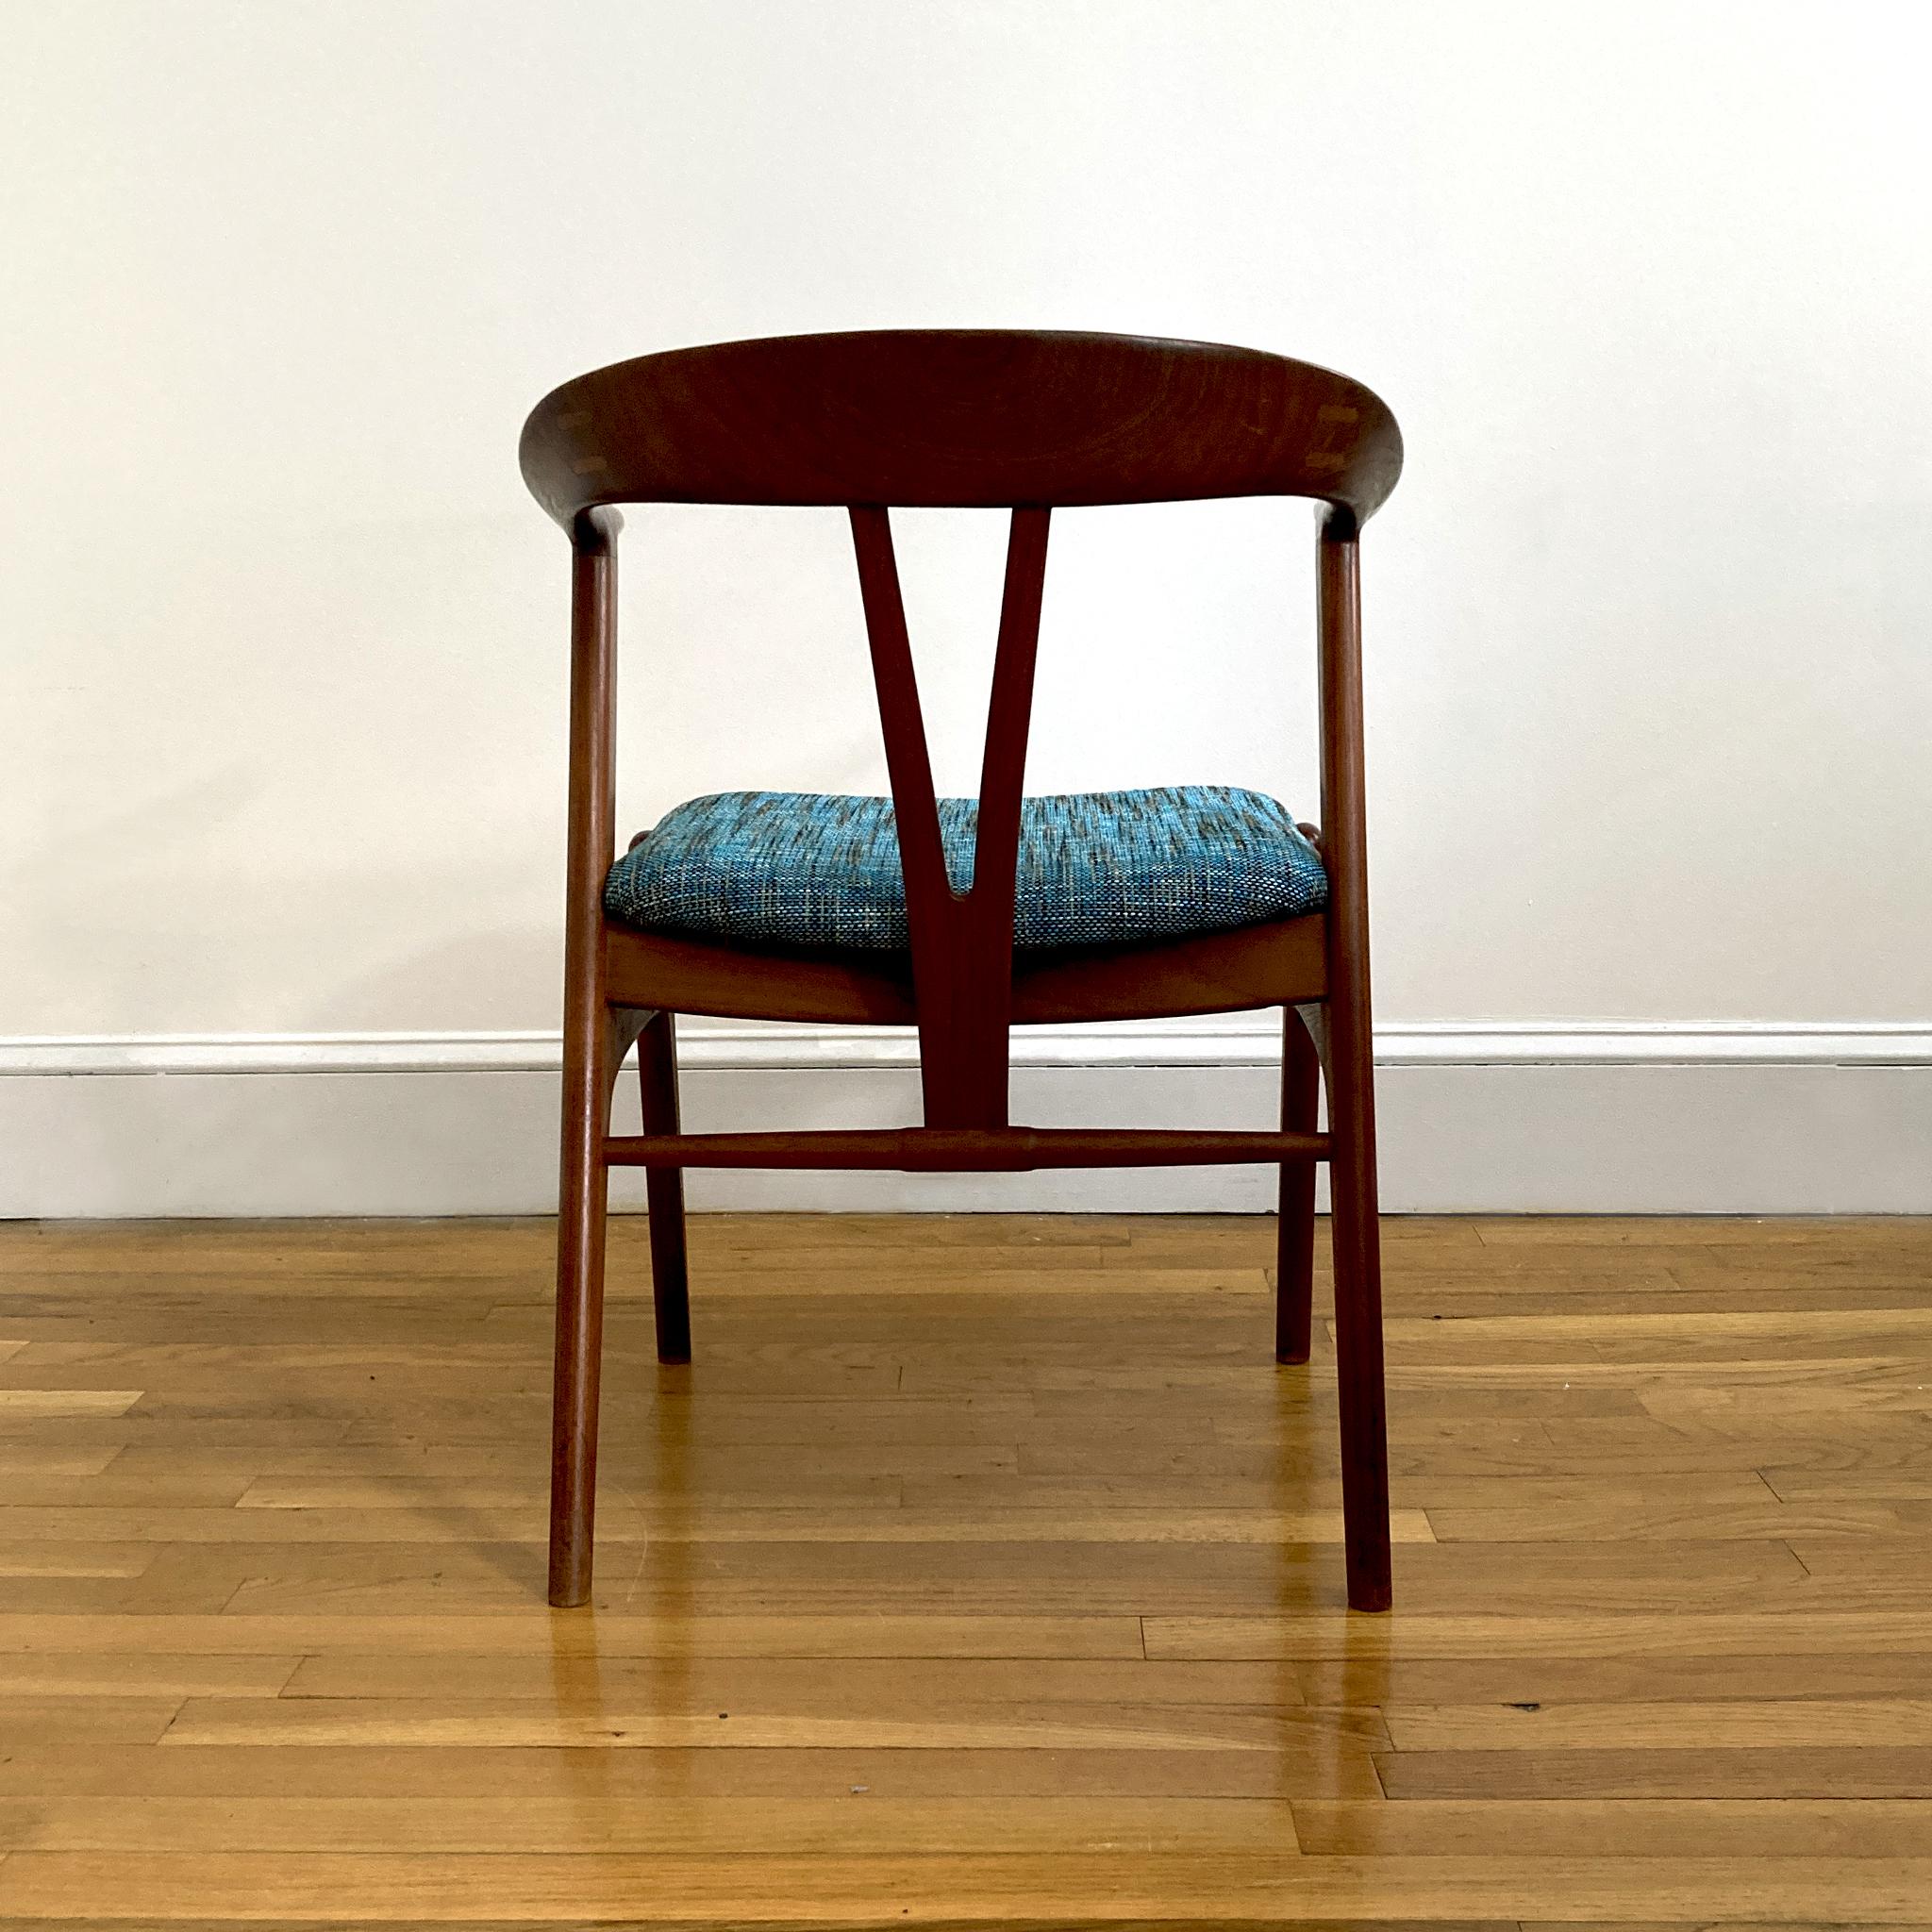 Carved Torbjørn Afdal Teak Form Chair with Green Teal Upholstery, 1950s For Sale